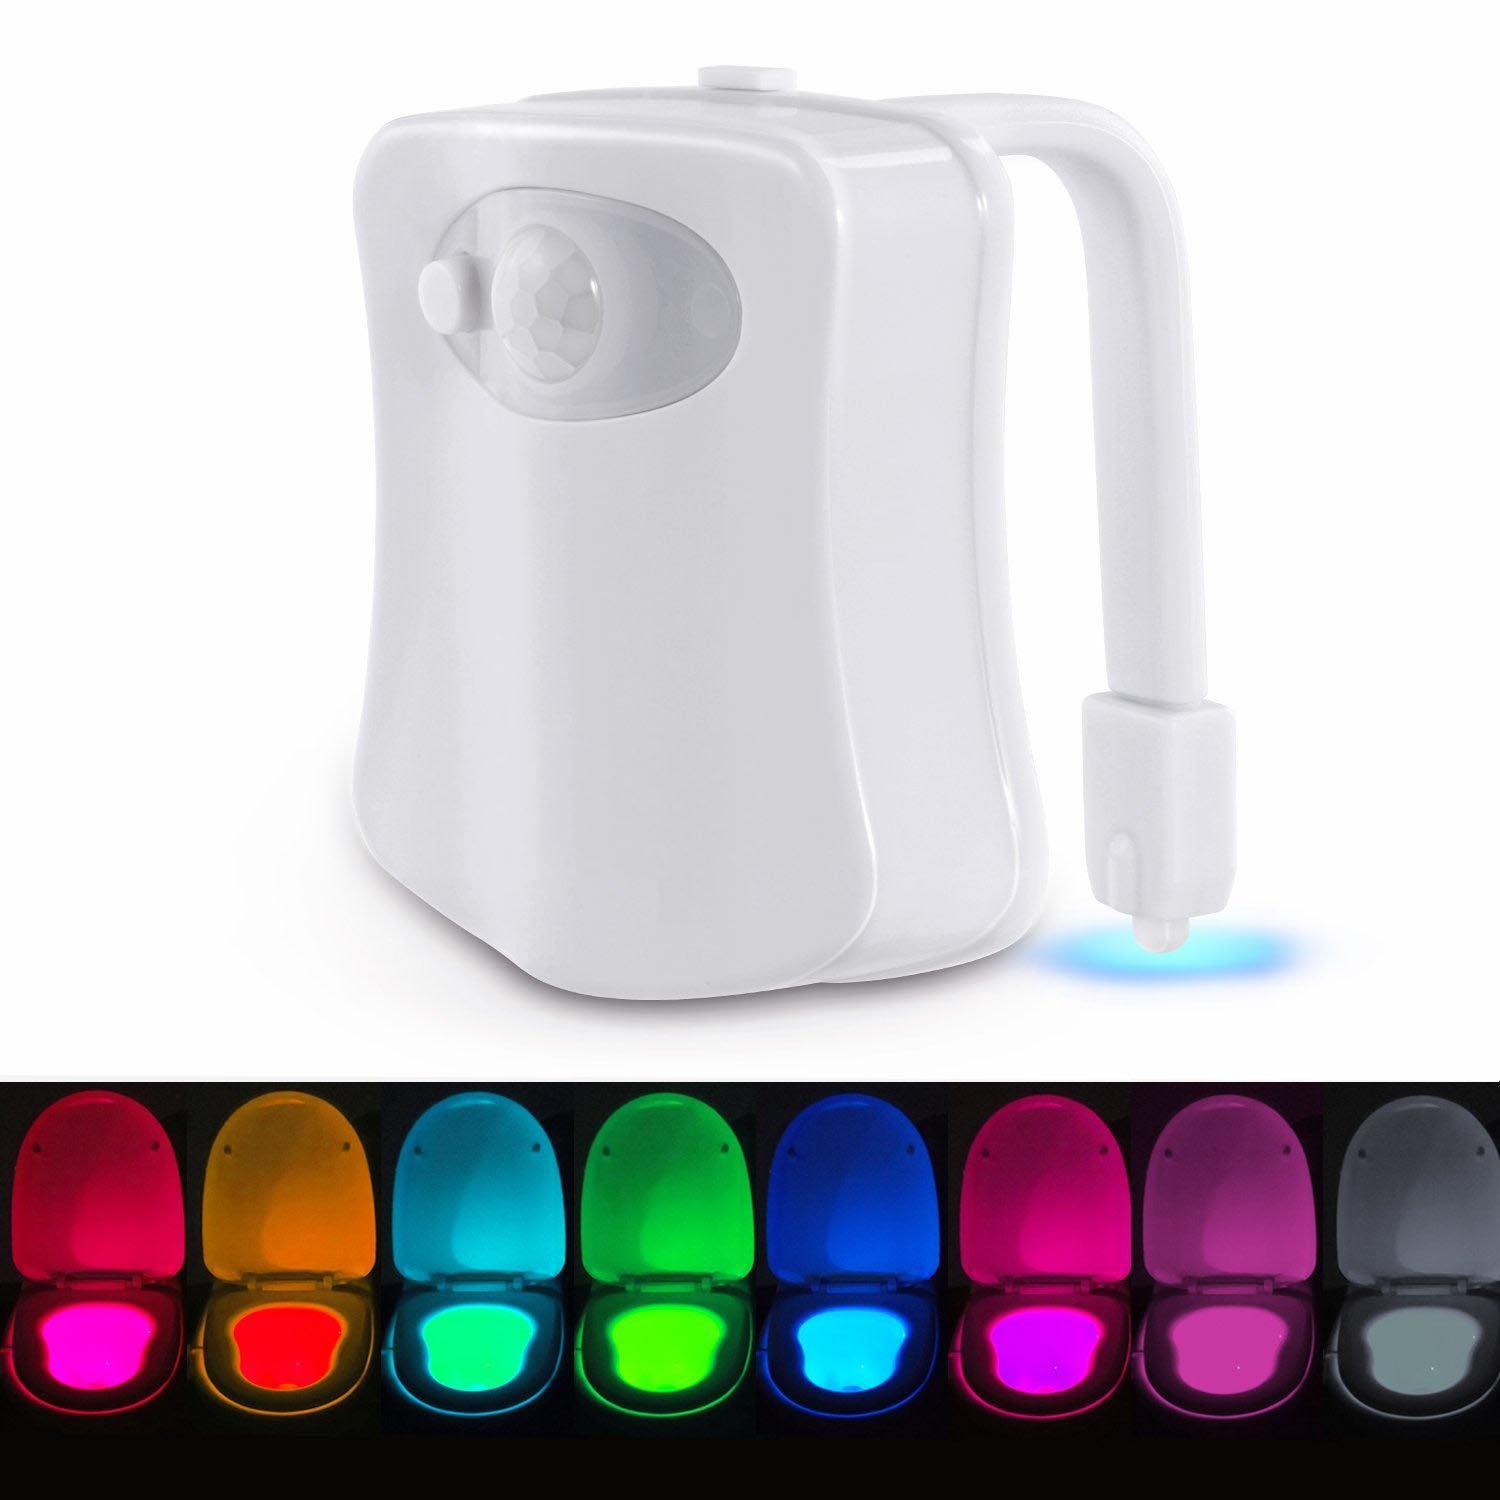 

8 цветов LED Туалетный свет Изменение движения активировано Ванная комната Туалетное сиденье Ночной свет Лампа